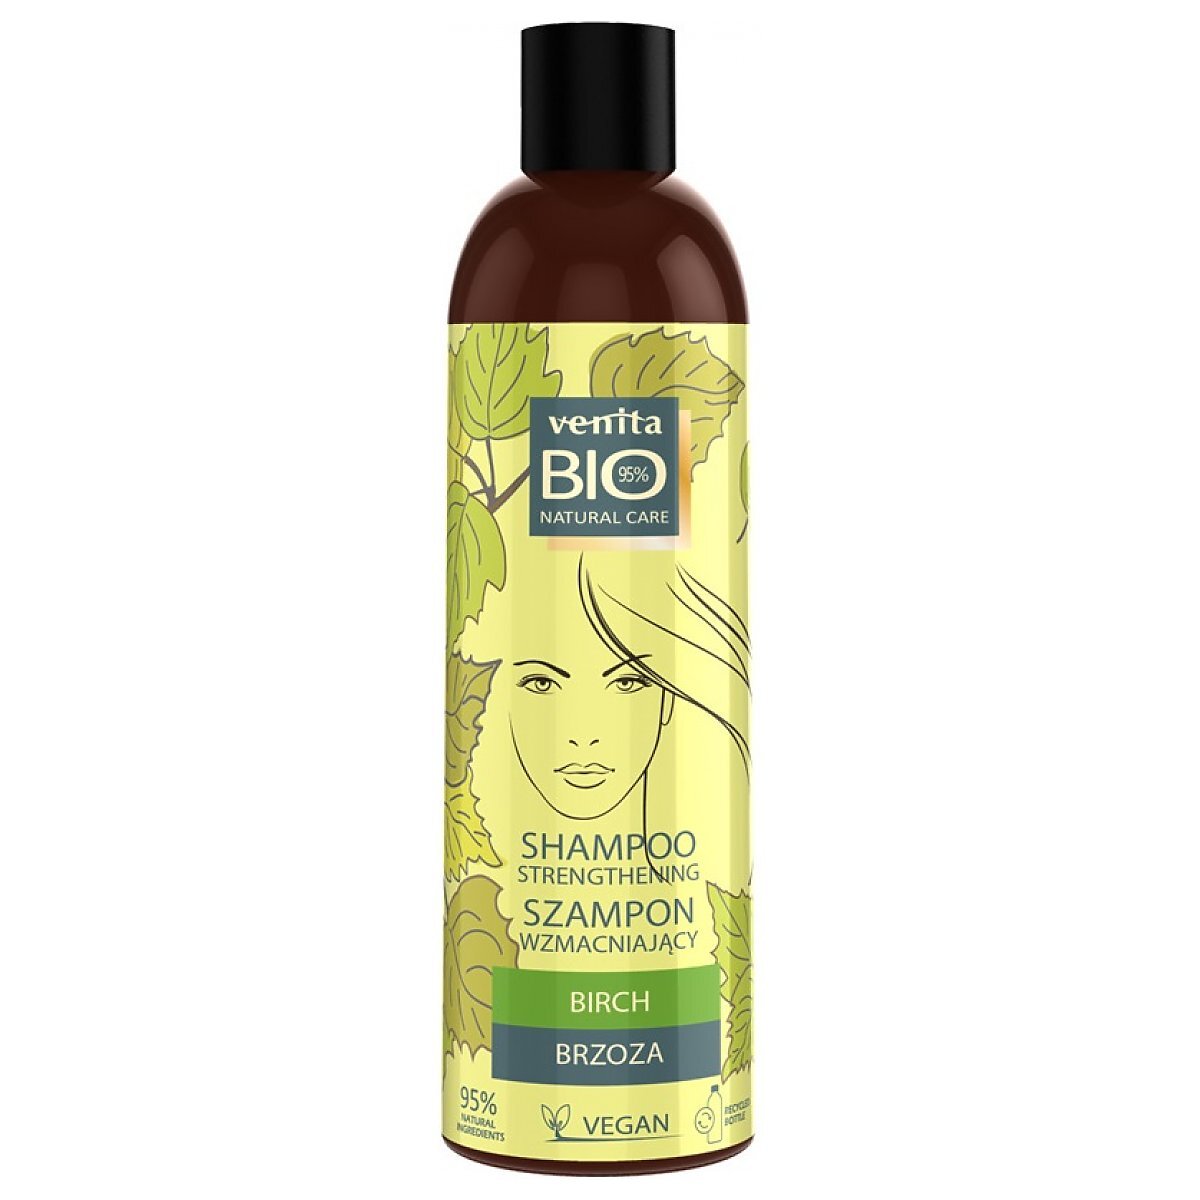 venita bio wzmacniający szampon do włosów